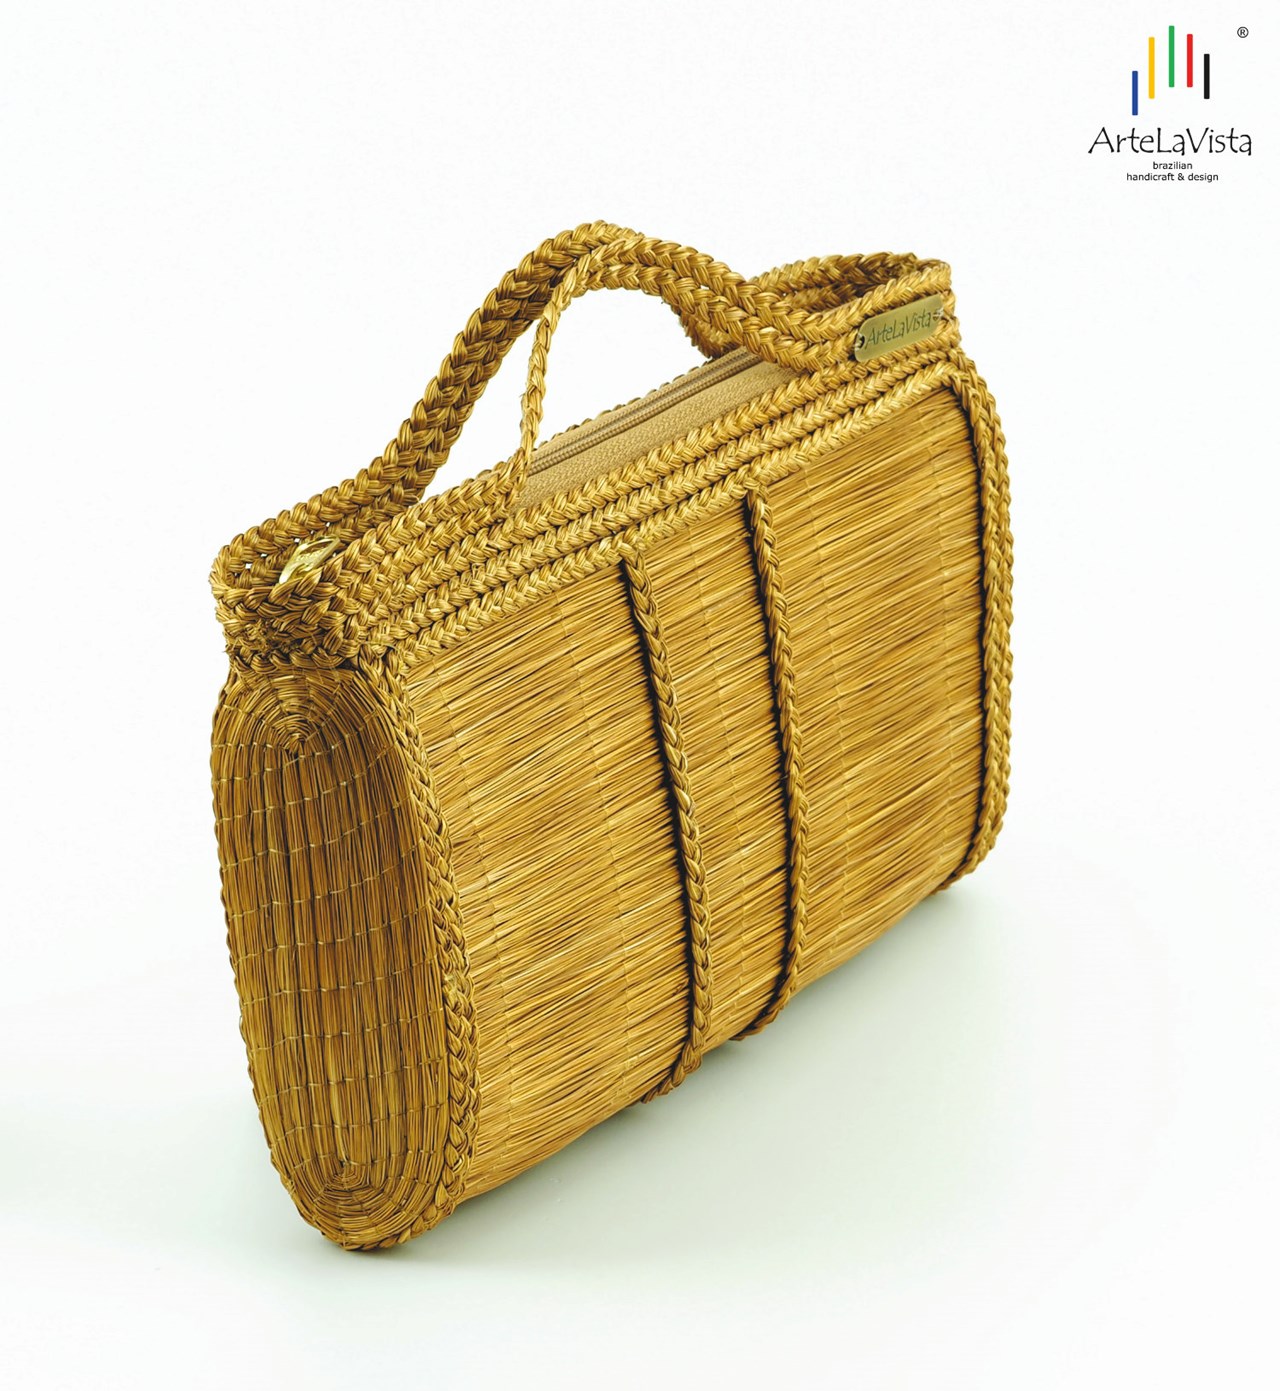 ArteLaVista - brazilian handicraft & design Produkt-Beispiele Iracema - Handtasche aus brasilianischem Goldgras